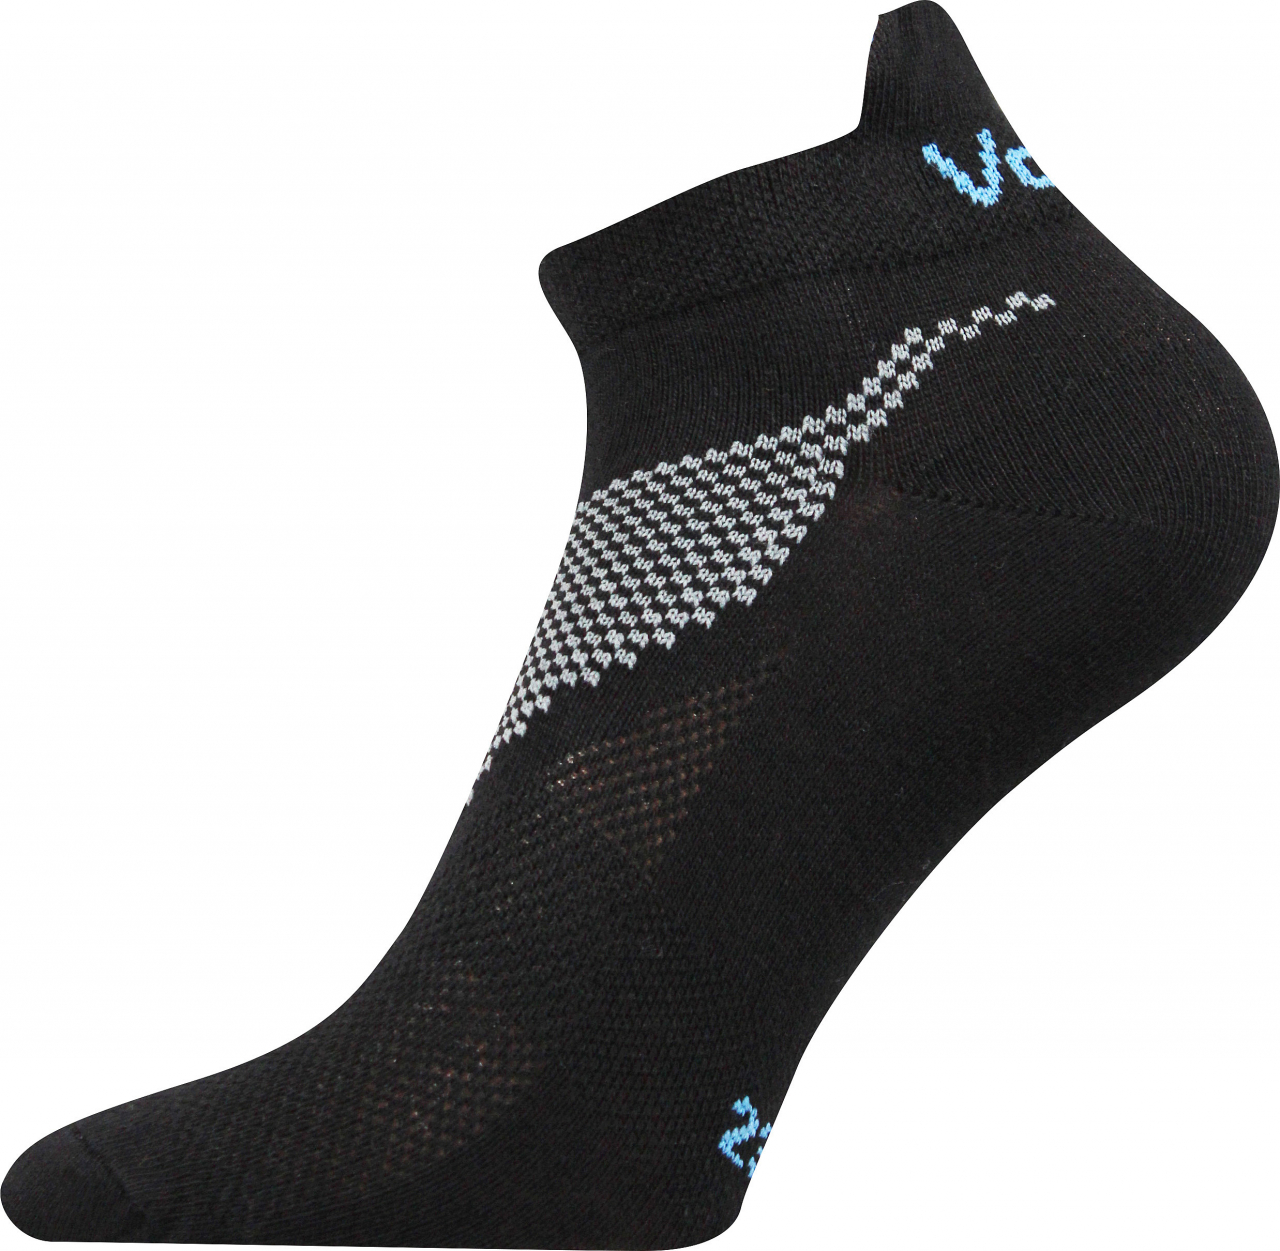 Ponožky sportovní nízké Voxx Iris - černé, 39-42